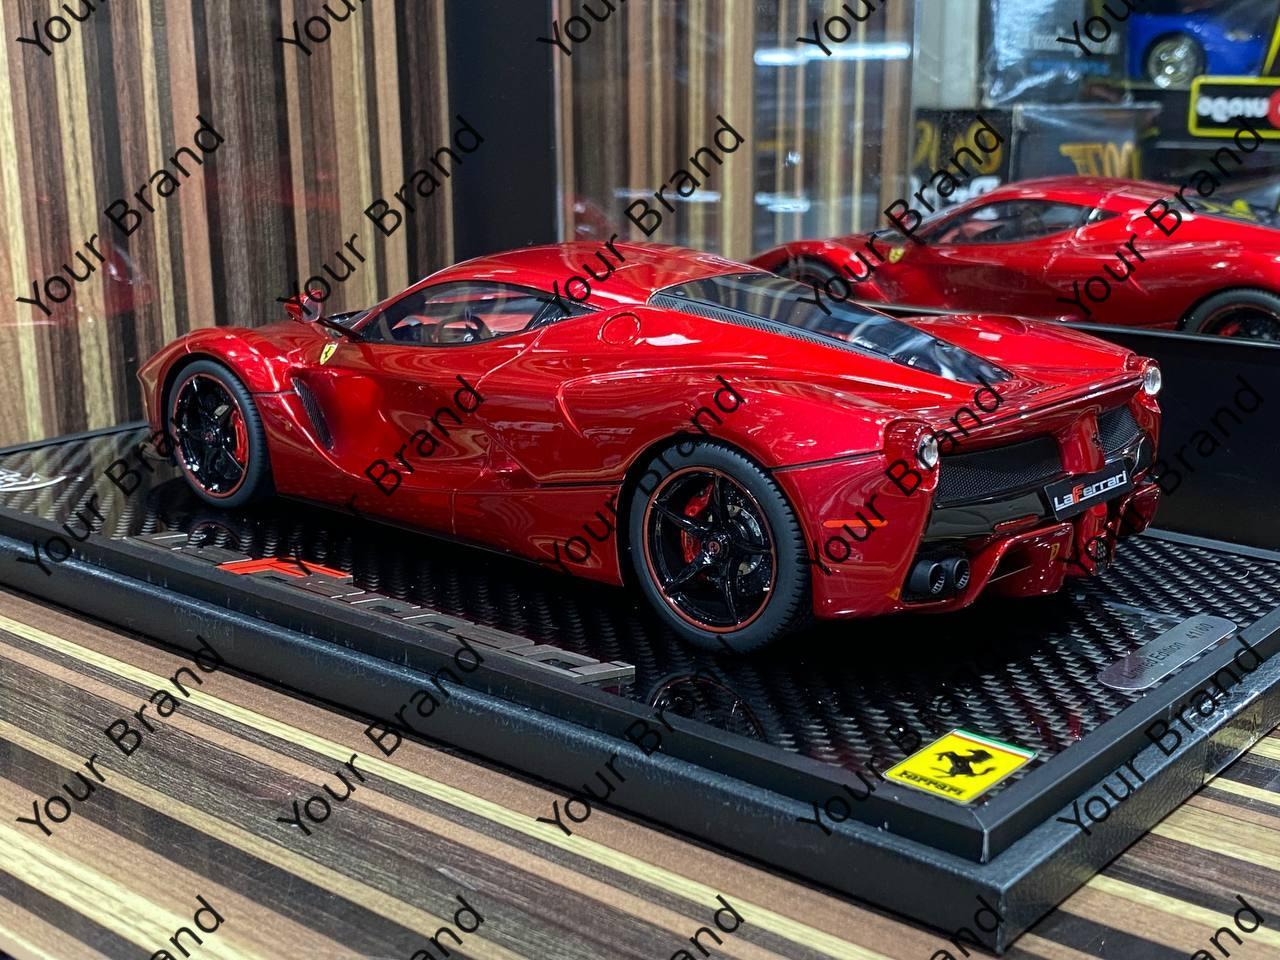 1/18 Diecast Ferrari LaFerrari Rosso Corsa BBR Scale Model Car